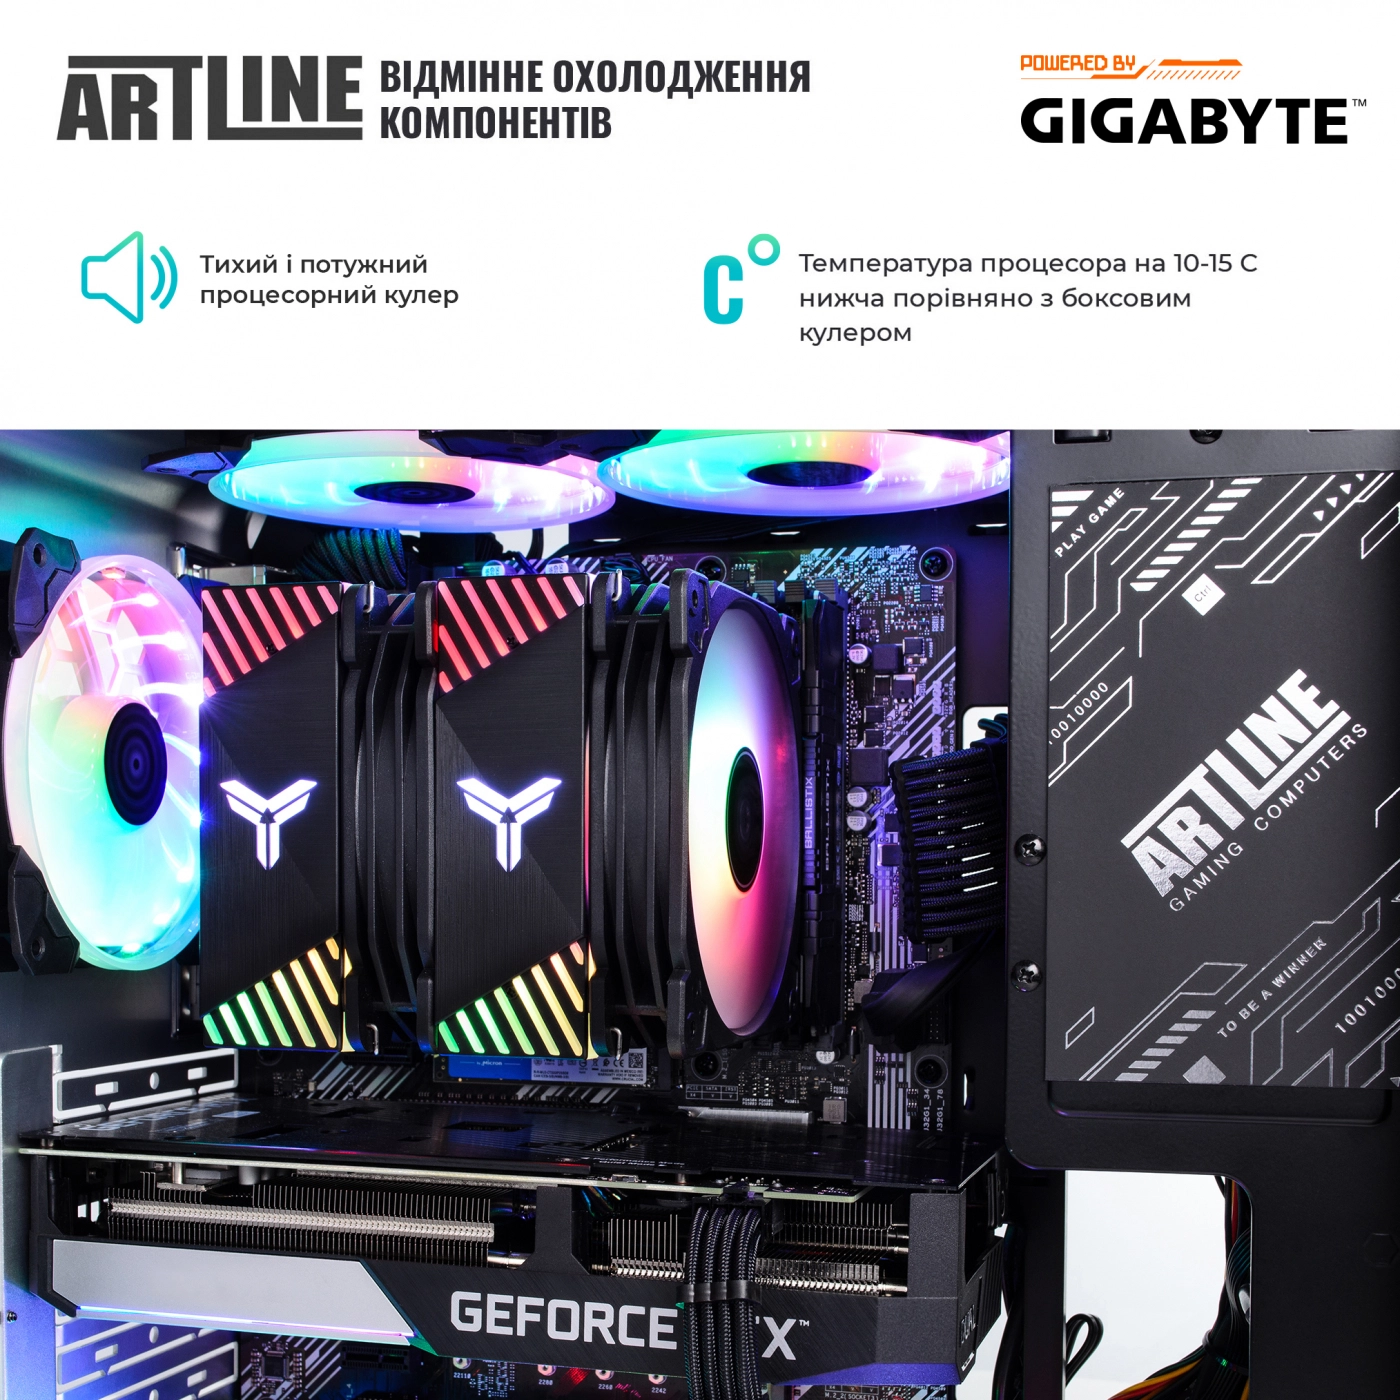 Купить Компьютер ARTLINE Gaming X55v34 - фото 4